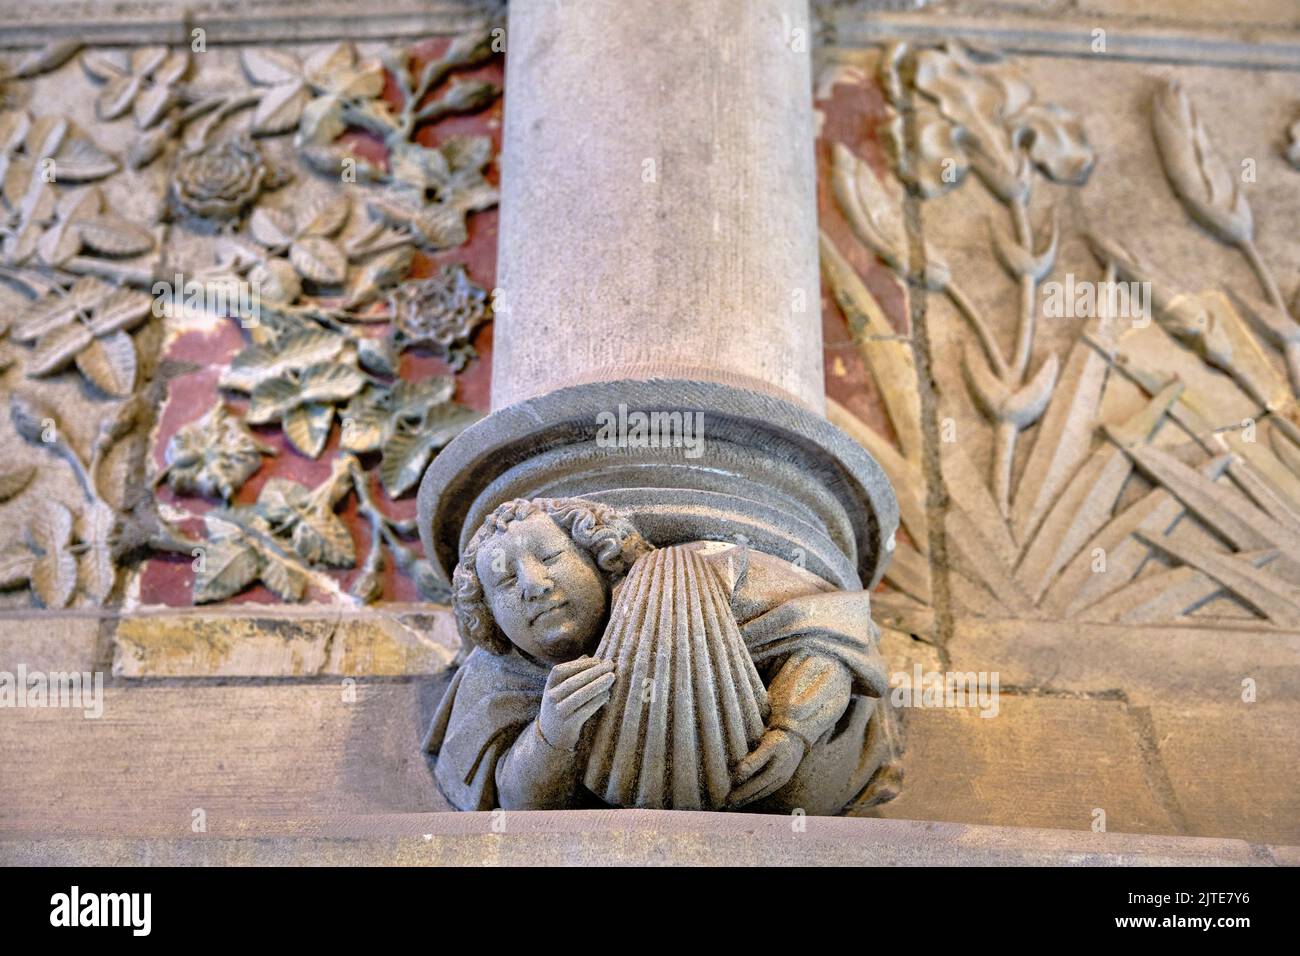 La France, cher (18), Bourges, Palais Jacques Coeur, fête, la figure avec un coeur, symbole de Jacques Coeur, sculptures sur la cheminée Banque D'Images